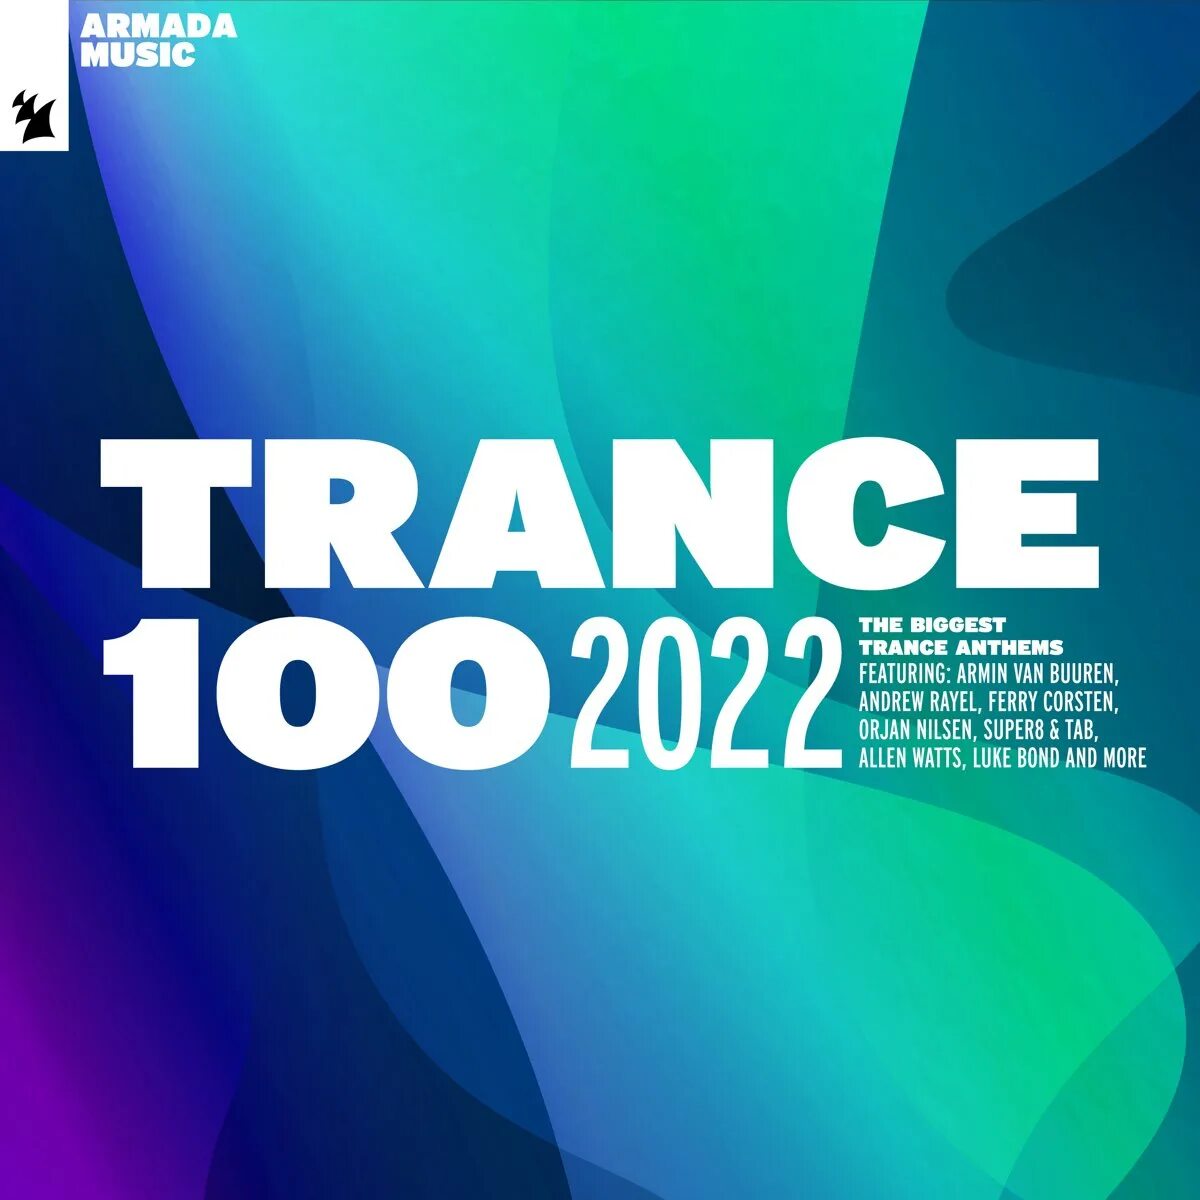 Va trance. Trance 100 2022. Armada Trance 100 2022. Trance 100 2021. Va Trance 100 2010 исполнители.